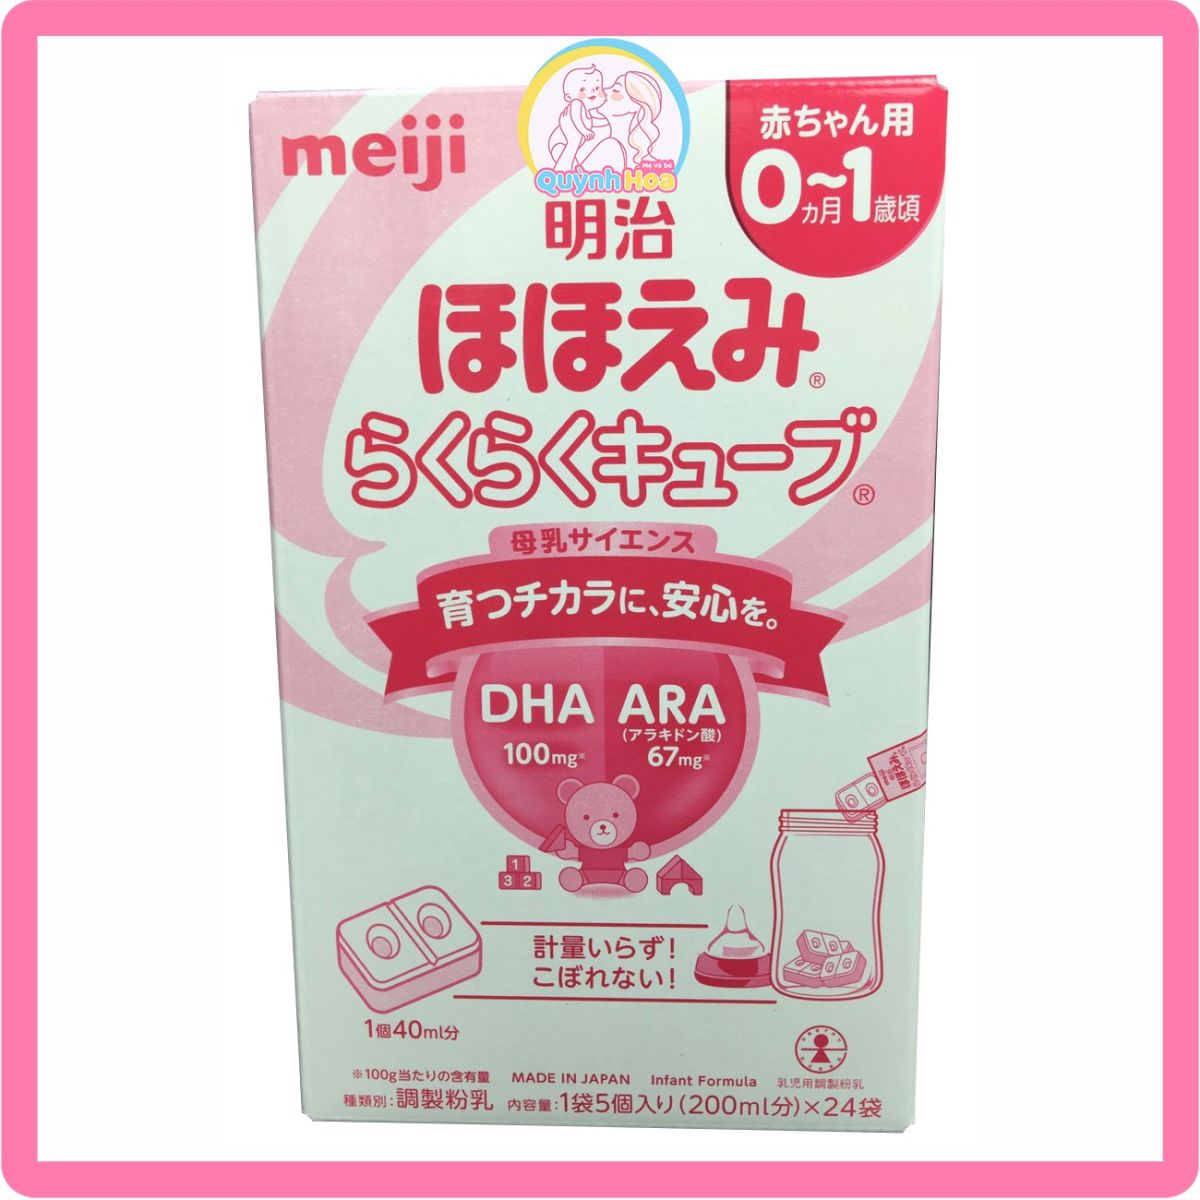 Sữa Meiji Nhật số 0-1 dạng thanh, MẪU MỚI 30 thanh  [DATE 02/2025]